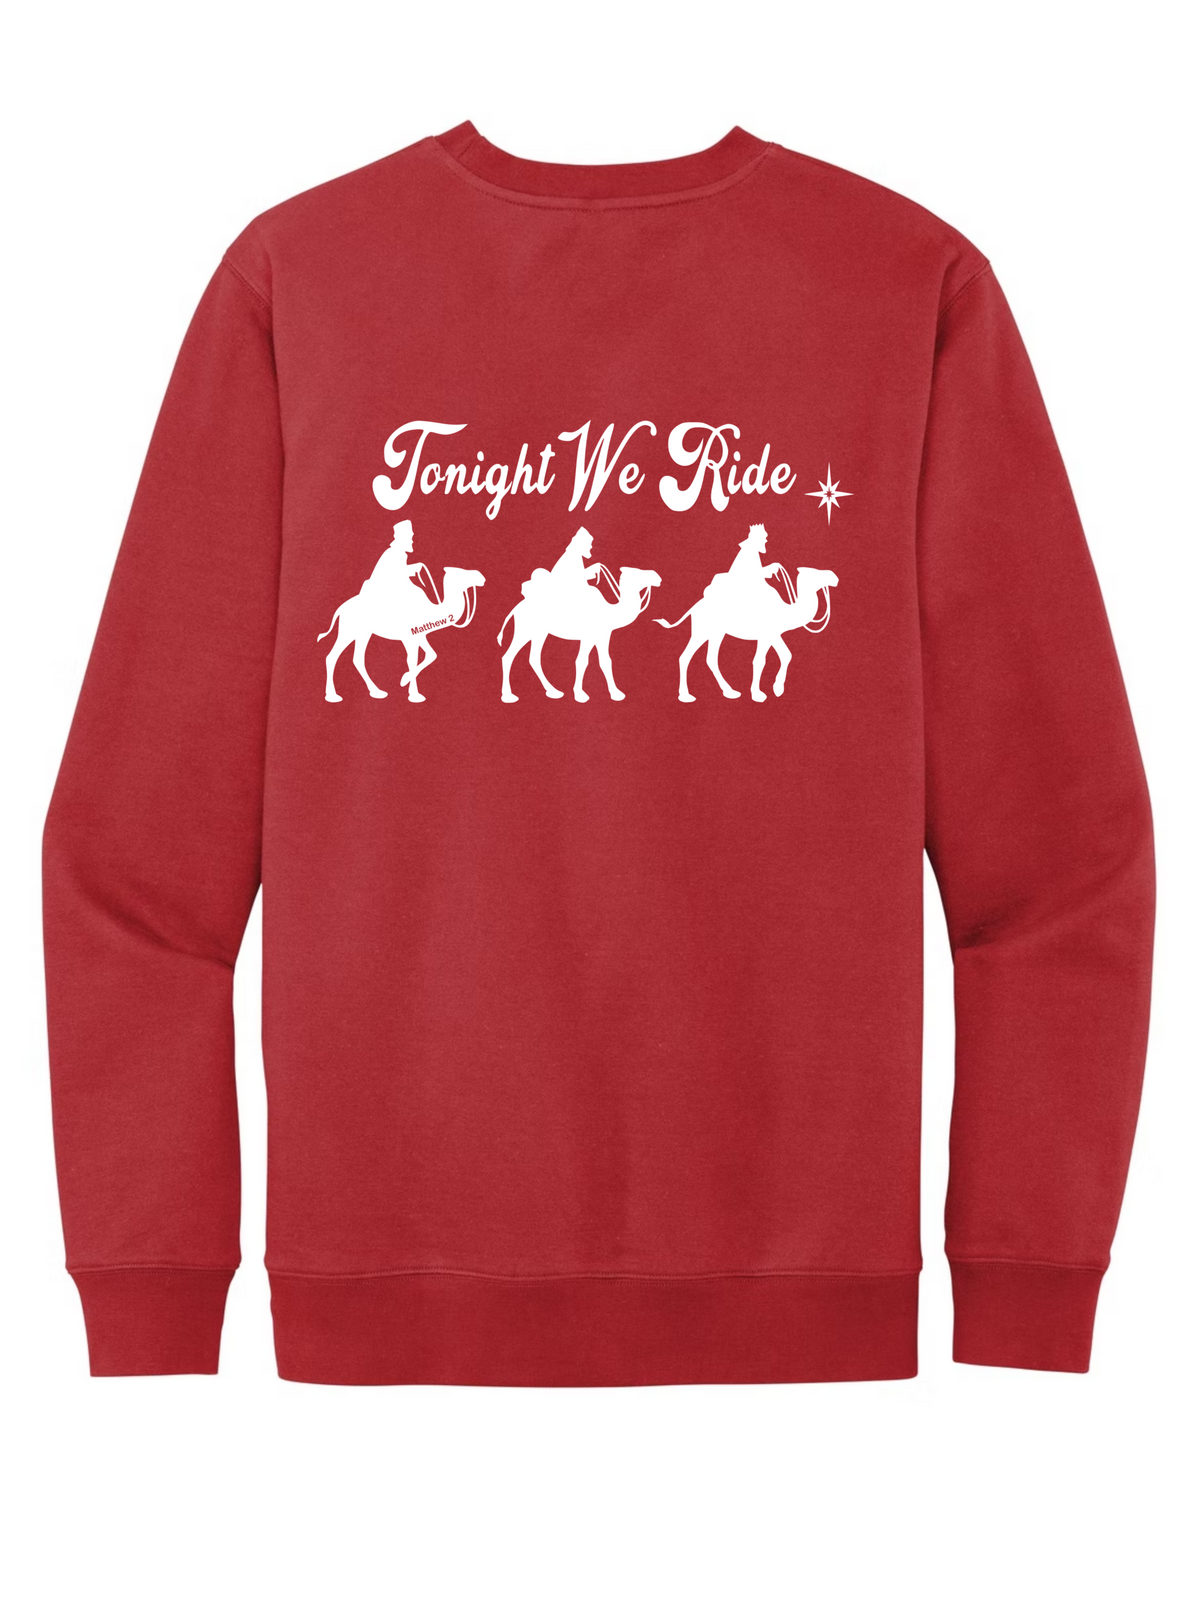 Tonight We Ride Adult Christmas Sweatshirt